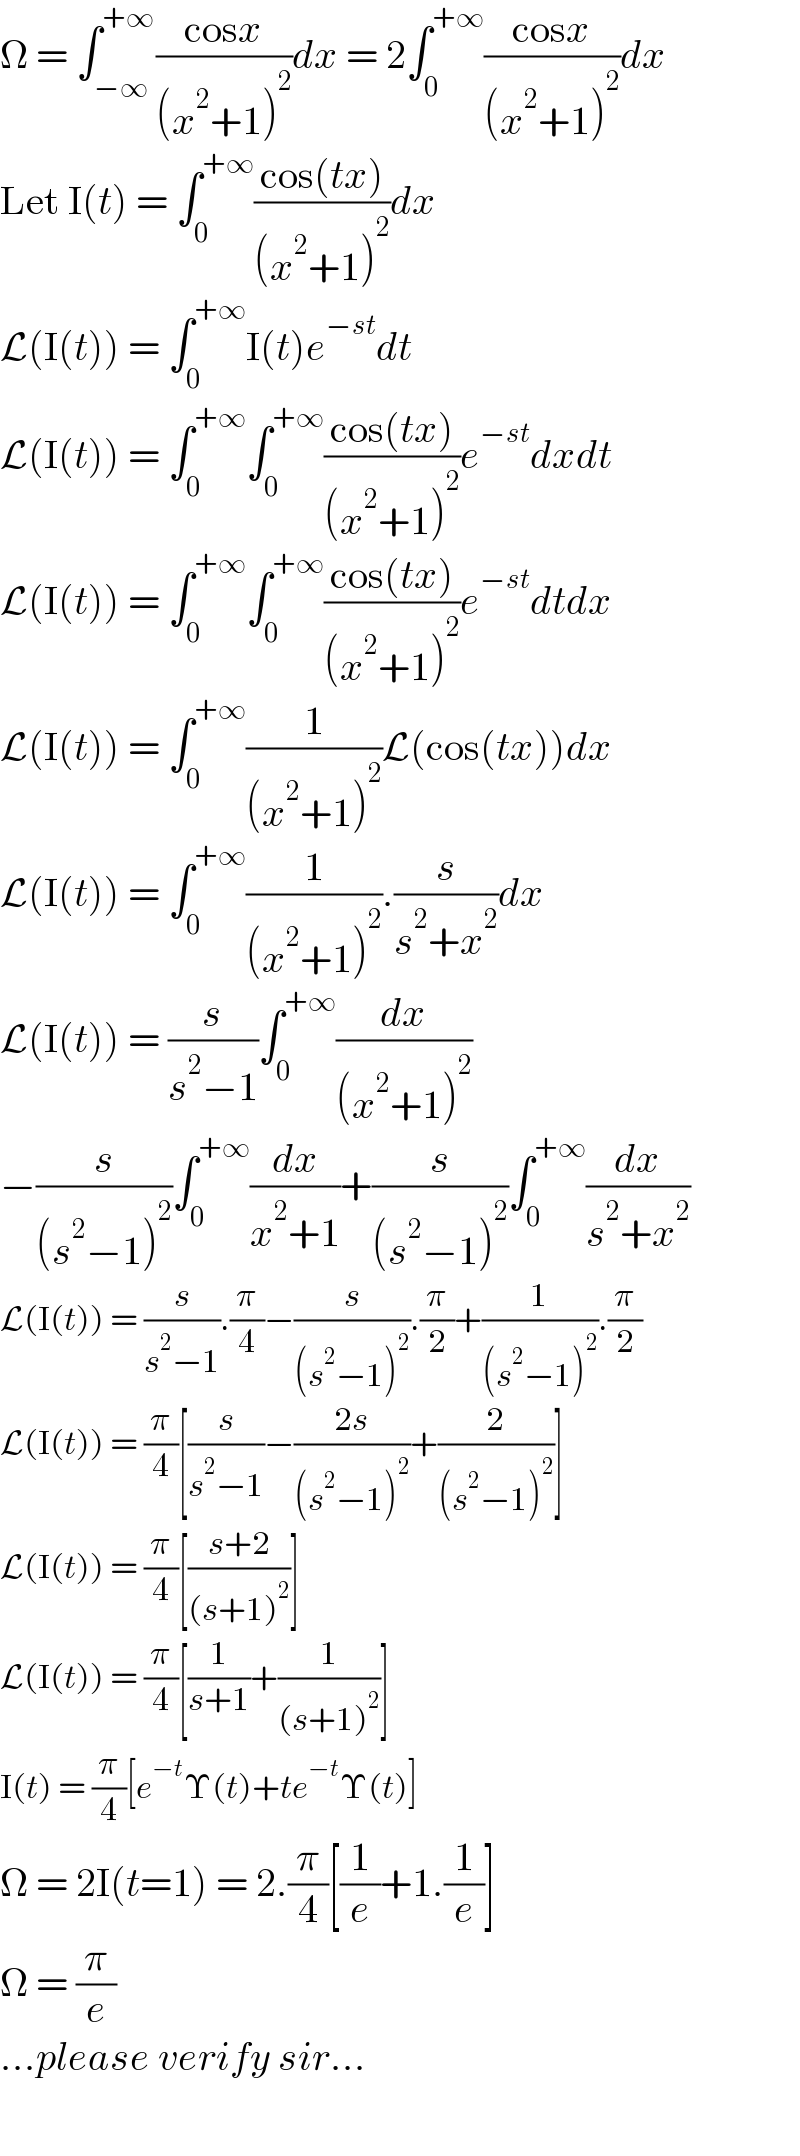 Ω = ∫_(−∞) ^(+∞) ((cosx)/((x^2 +1)^2 ))dx = 2∫_0 ^(+∞) ((cosx)/((x^2 +1)^2 ))dx  Let I(t) = ∫_0 ^(+∞) ((cos(tx))/((x^2 +1)^2 ))dx  L(I(t)) = ∫_0 ^(+∞) I(t)e^(−st) dt  L(I(t)) = ∫_0 ^(+∞) ∫_0 ^(+∞) ((cos(tx))/((x^2 +1)^2 ))e^(−st) dxdt  L(I(t)) = ∫_0 ^(+∞) ∫_0 ^(+∞) ((cos(tx))/((x^2 +1)^2 ))e^(−st) dtdx  L(I(t)) = ∫_0 ^(+∞) (1/((x^2 +1)^2 ))L(cos(tx))dx  L(I(t)) = ∫_0 ^(+∞) (1/((x^2 +1)^2 )).(s/(s^2 +x^2 ))dx  L(I(t)) = (s/(s^2 −1))∫_0 ^(+∞) (dx/((x^2 +1)^2 ))  −(s/((s^2 −1)^2 ))∫_0 ^(+∞) (dx/(x^2 +1))+(s/((s^2 −1)^2 ))∫_0 ^(+∞) (dx/(s^2 +x^2 ))  L(I(t)) = (s/(s^2 −1)).(π/4)−(s/((s^2 −1)^2 )).(π/2)+(1/((s^2 −1)^2 )).(π/2)  L(I(t)) = (π/4)[(s/(s^2 −1))−((2s)/((s^2 −1)^2 ))+(2/((s^2 −1)^2 ))]  L(I(t)) = (π/4)[((s+2)/((s+1)^2 ))]  L(I(t)) = (π/4)[(1/(s+1))+(1/((s+1)^2 ))]  I(t) = (π/4)[e^(−t) Υ(t)+te^(−t) Υ(t)]  Ω = 2I(t=1) = 2.(π/4)[(1/e)+1.(1/e)]  Ω = (π/e)  ...please verify sir...    